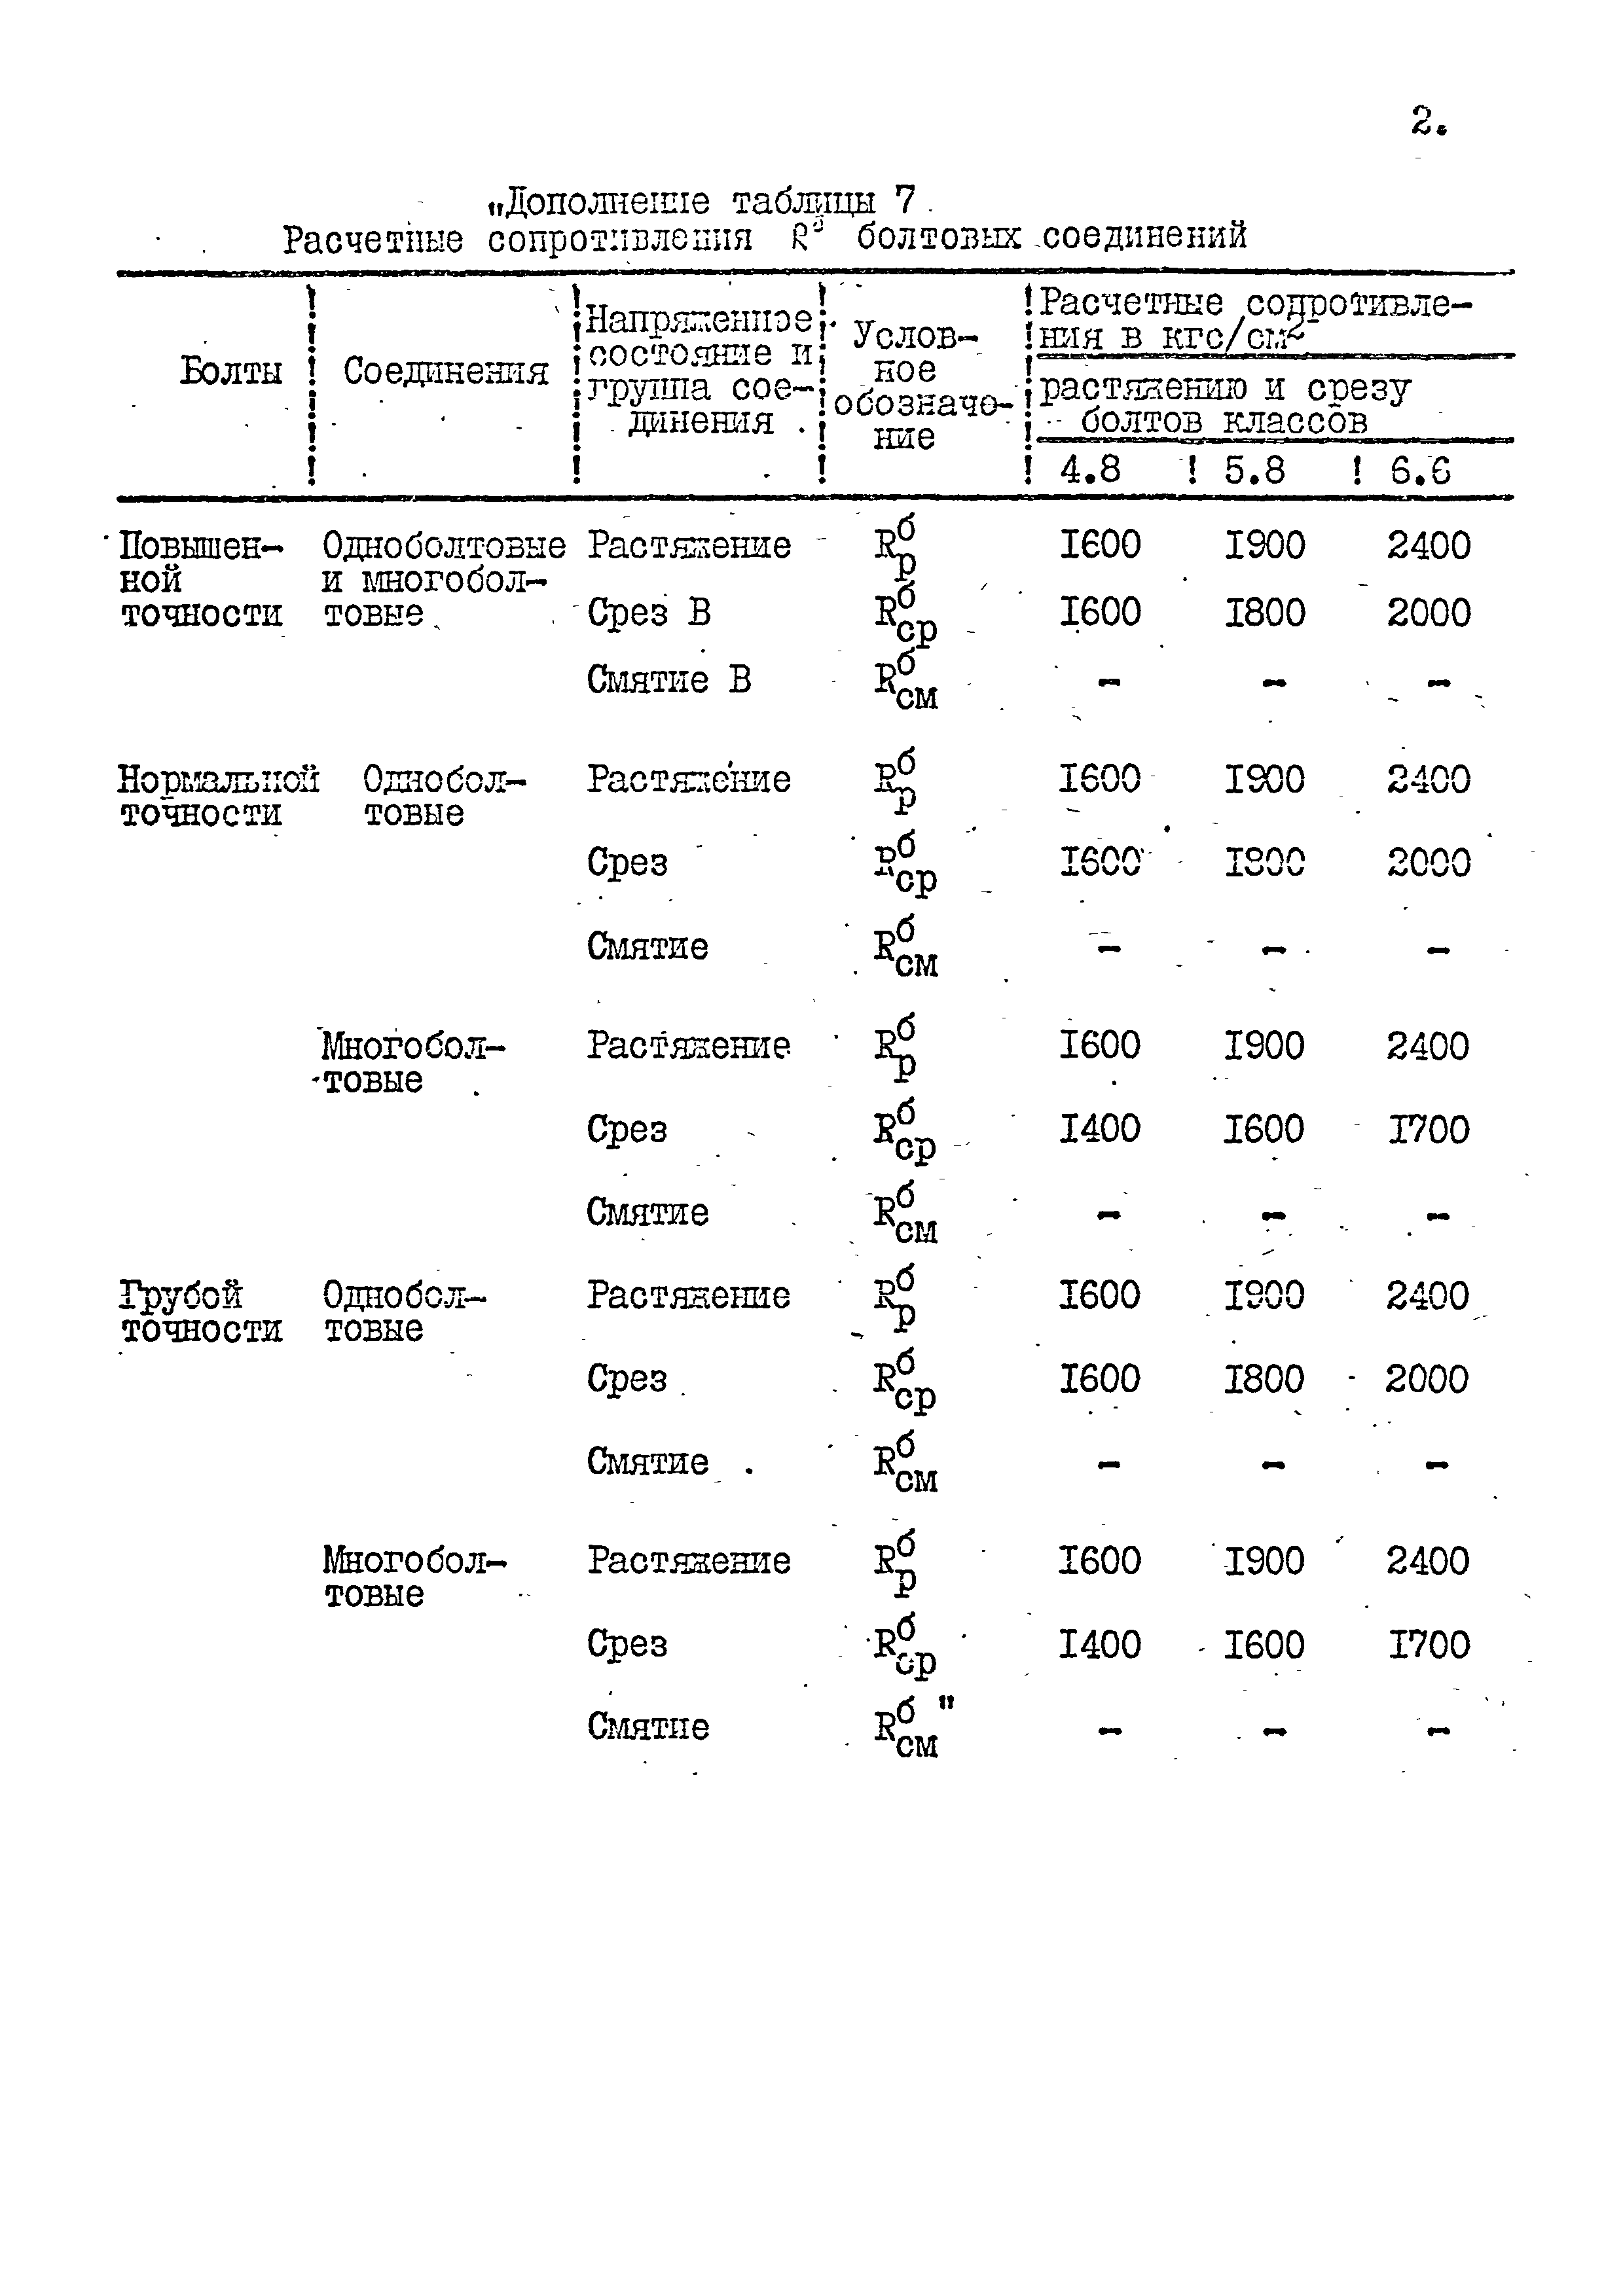 СНиП II-В.3-72